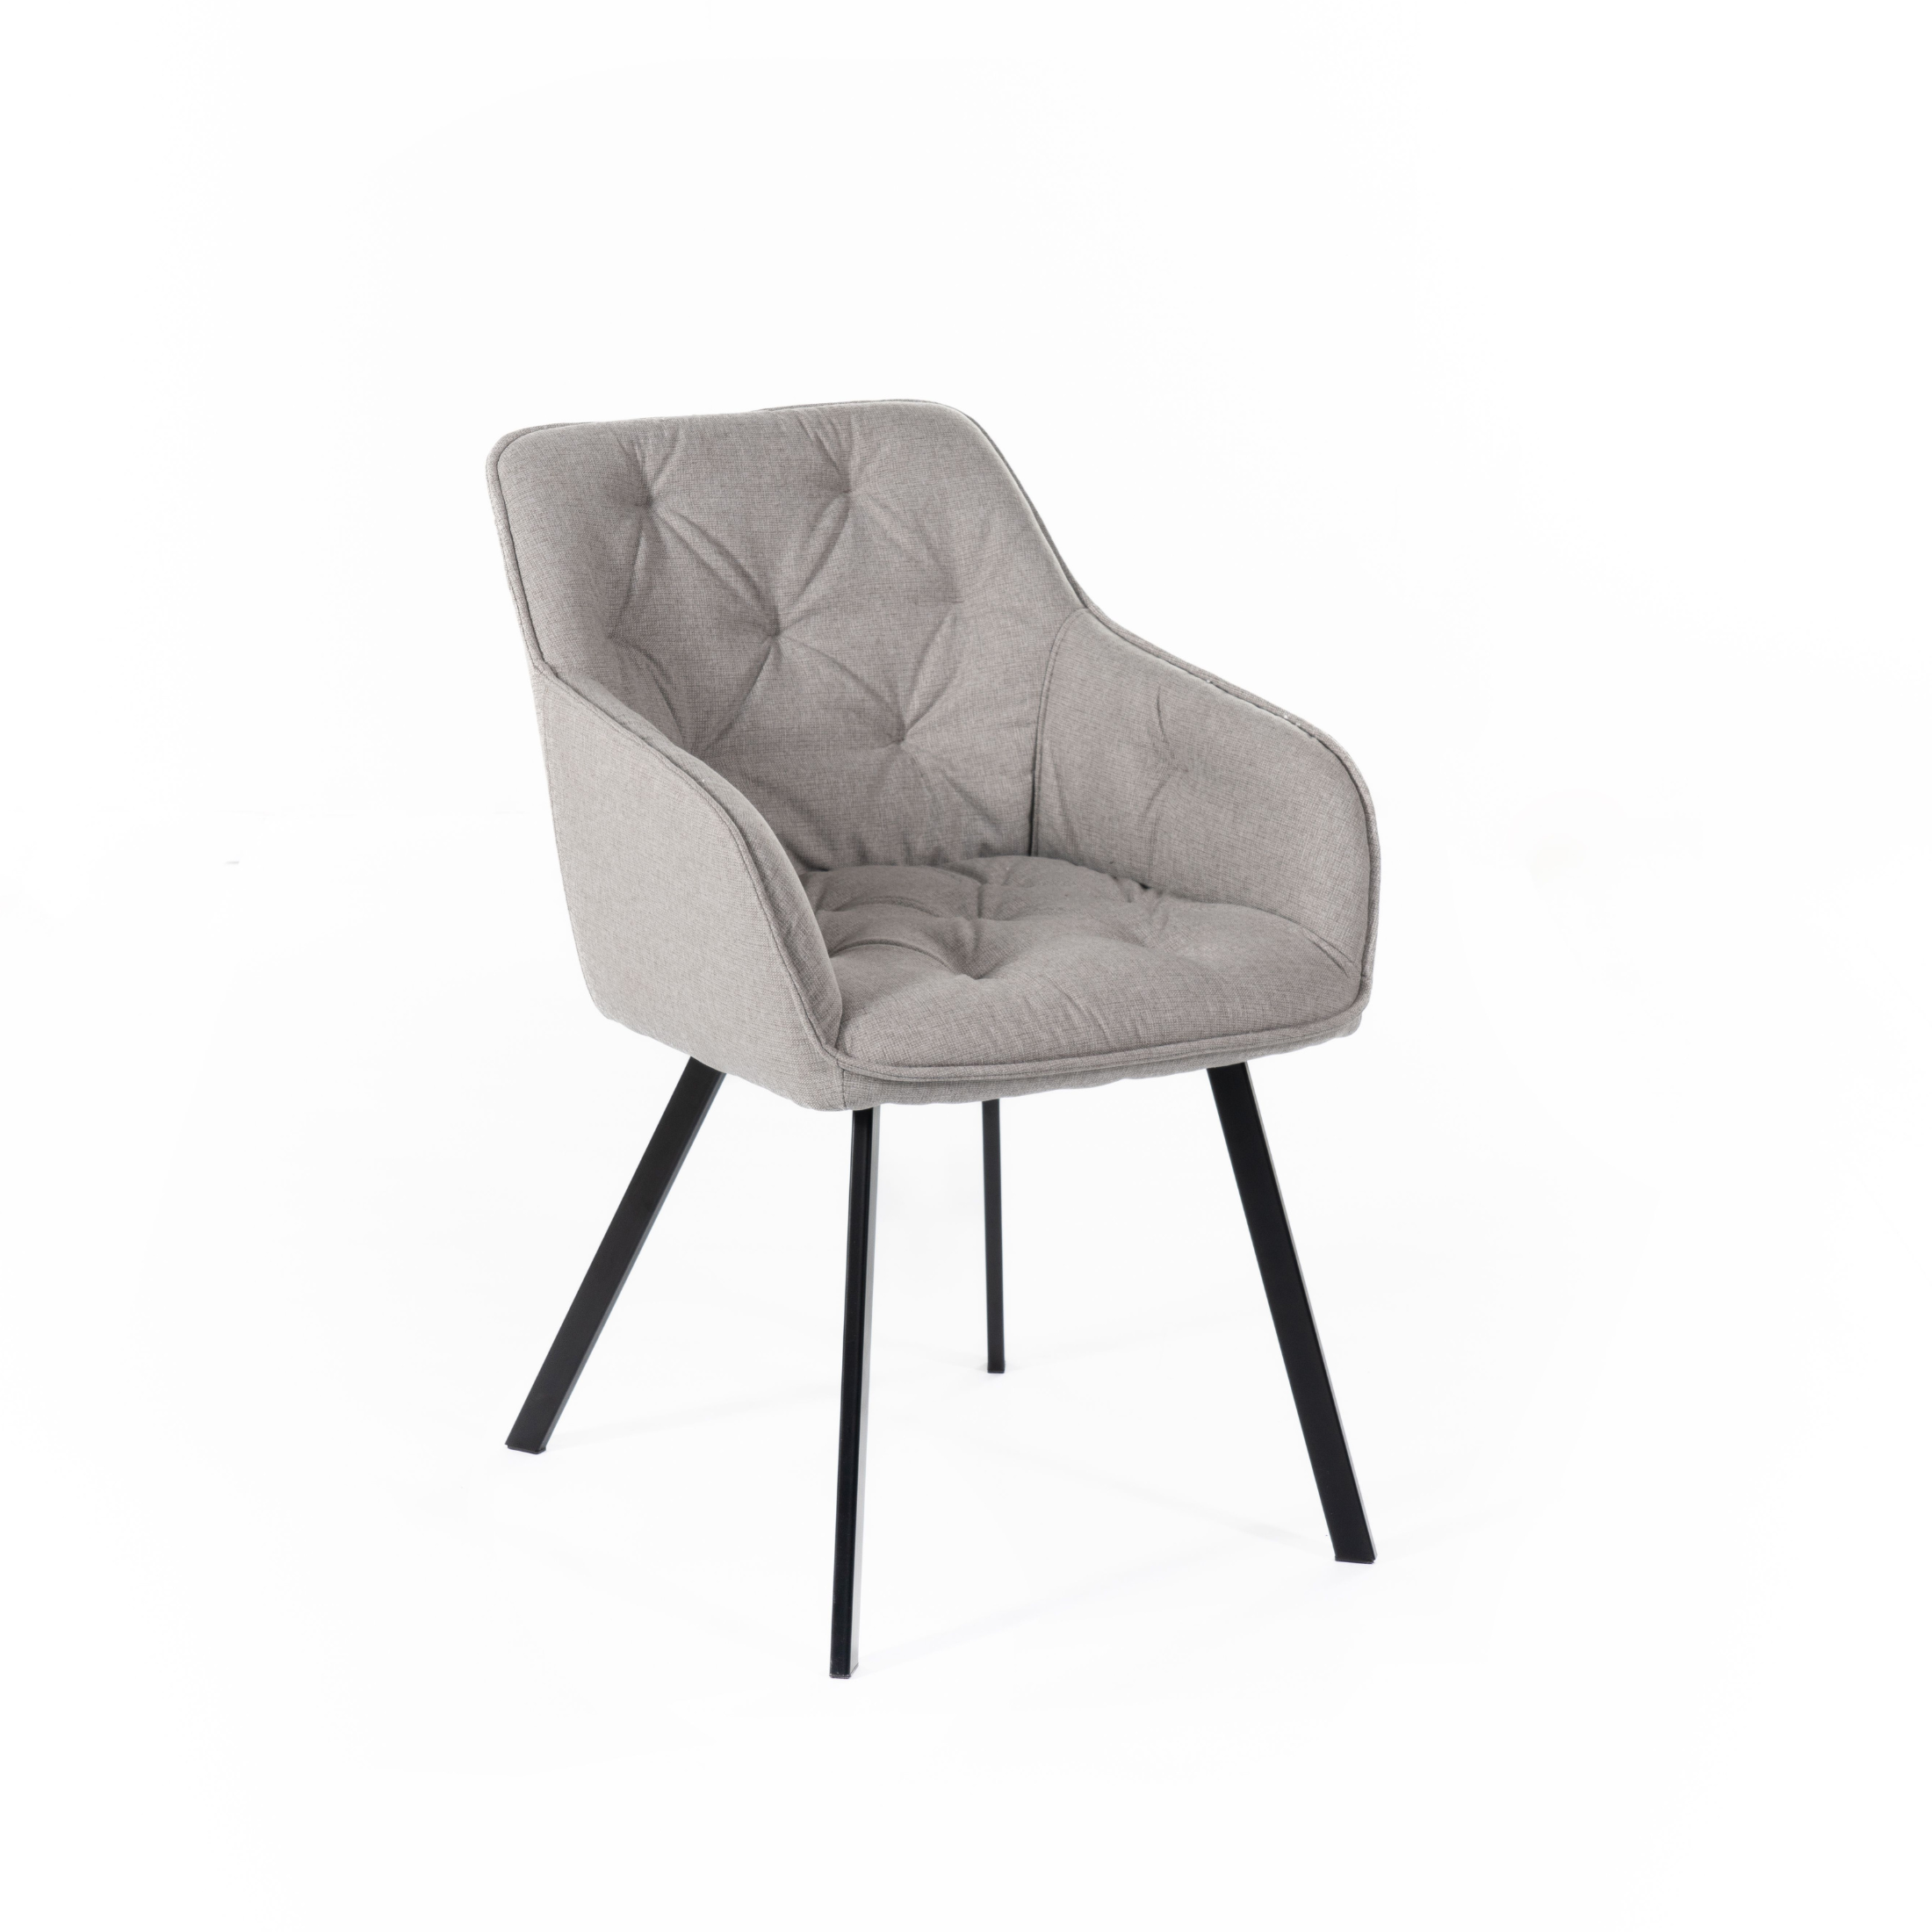 Set sedie imbottite "Elsa" da soggiorno in tessuto gambe in metallo verniciato cm 55x60 79h